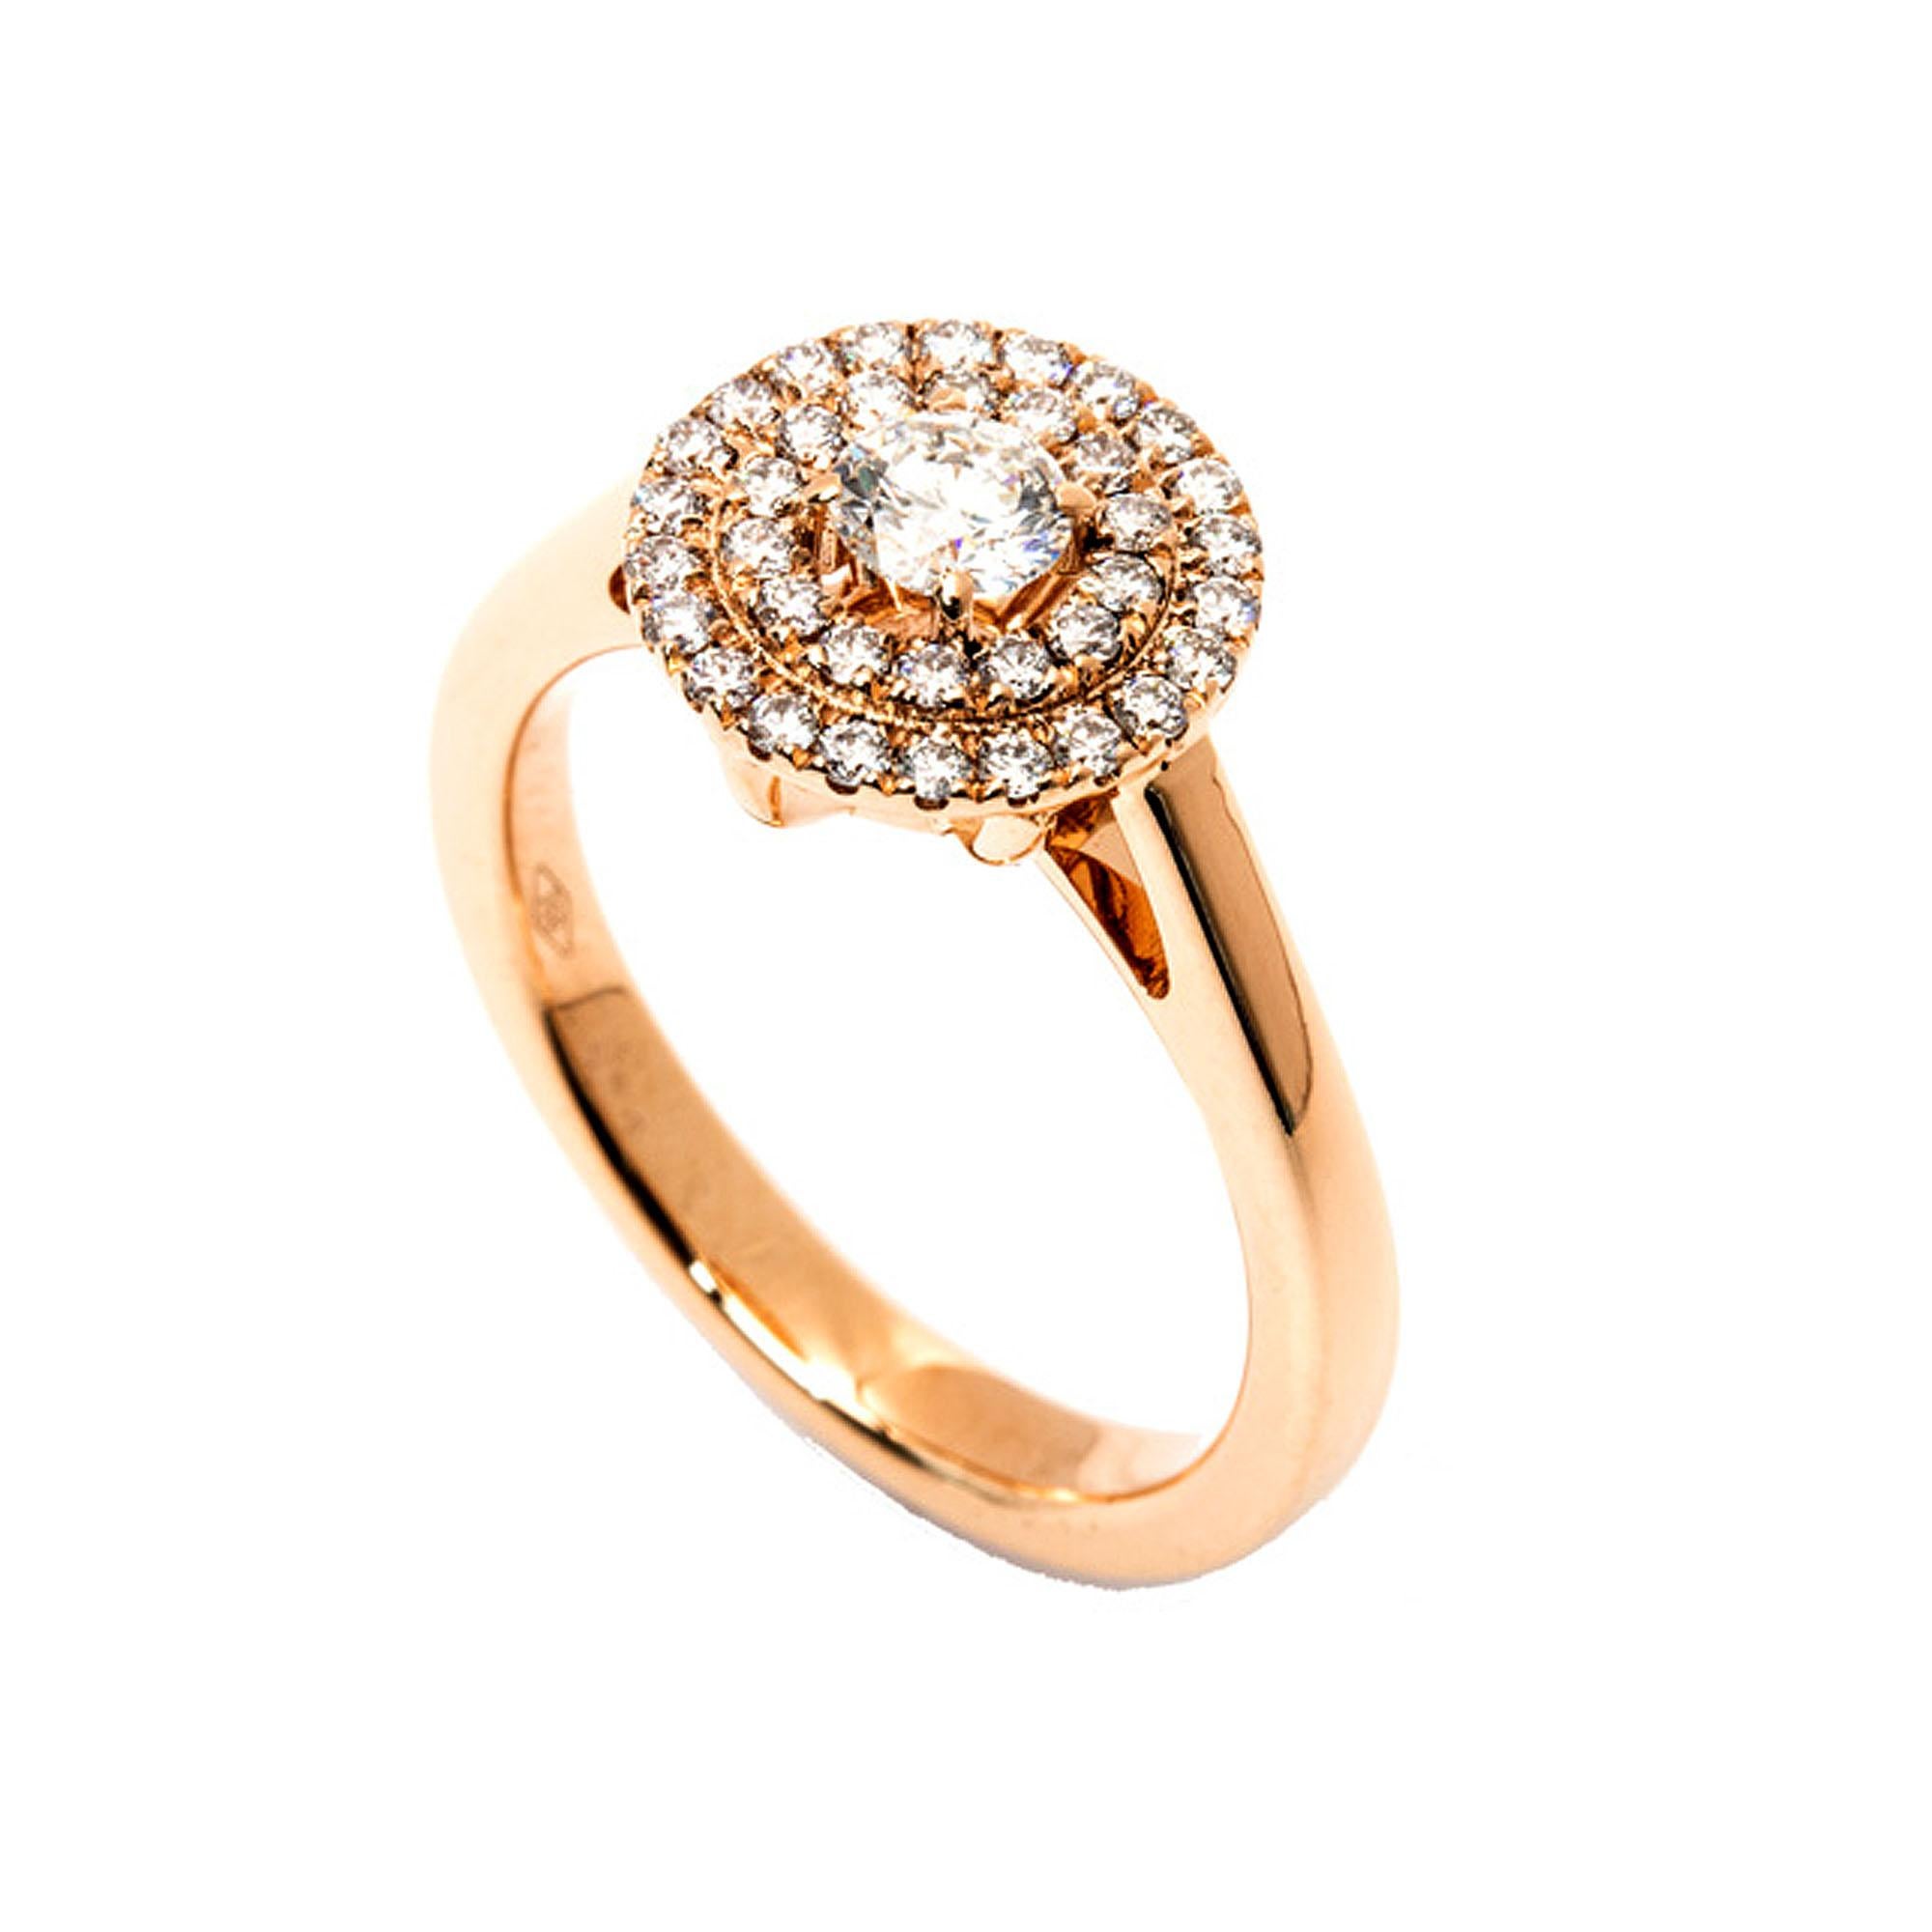 La bague double halo en or à diamants ronds certifiée GIA est un bijou à couper le souffle qui témoigne d'une sophistication et d'une élégance intemporelle. Cette bague exquise est ornée d'un diamant de 0,50 carat placé au centre, certifié par le